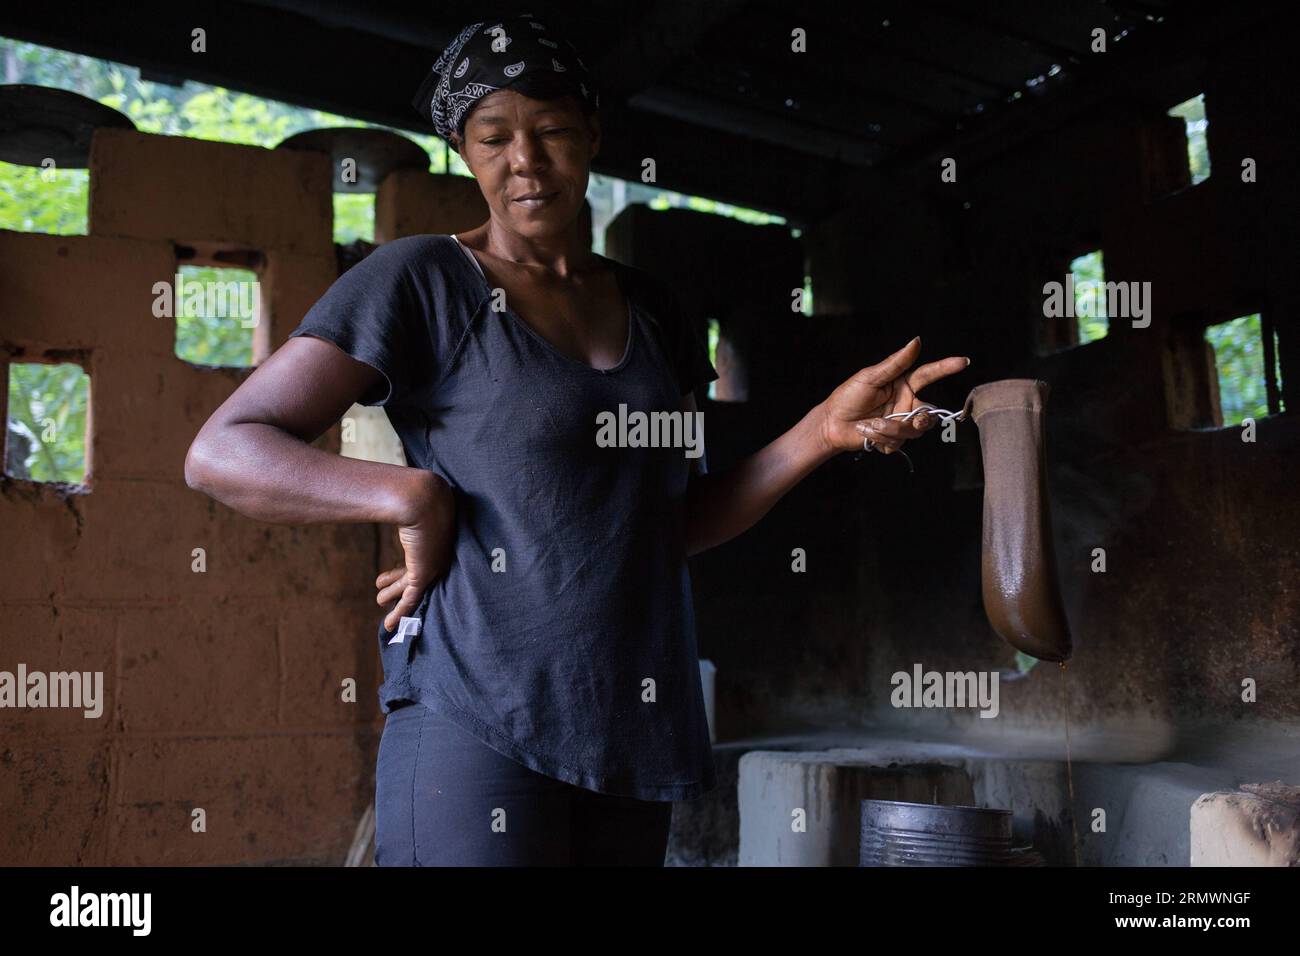 (141106) -- SAN CRISTOBAL, -- immagine scattata il 29 ottobre 2014 mostra un operaio che produce caffè in modo tradizionale in una fattoria del comune di Los Cacaos, a San Cristobal, Repubblica Dominicana. La vita del 10% della popolazione dominicana ruota intorno alla produzione di caffè. Fran Afonso) REPUBBLICA DOMINICANA-SAN CRISTOBAL-AGRICULTURE-COFFEE e FRANxAFONSO PUBLICATIONxNOTxINxCHN San Cristobal immagine scattata IL 29 2014 ottobre mostra un lavoratore che produce caffè in modo tradizionale in una fattoria del comune di Los Cacaos a San Cristobal Repubblica Dominicana la vita del 10% dei Populati Dominicani Foto Stock